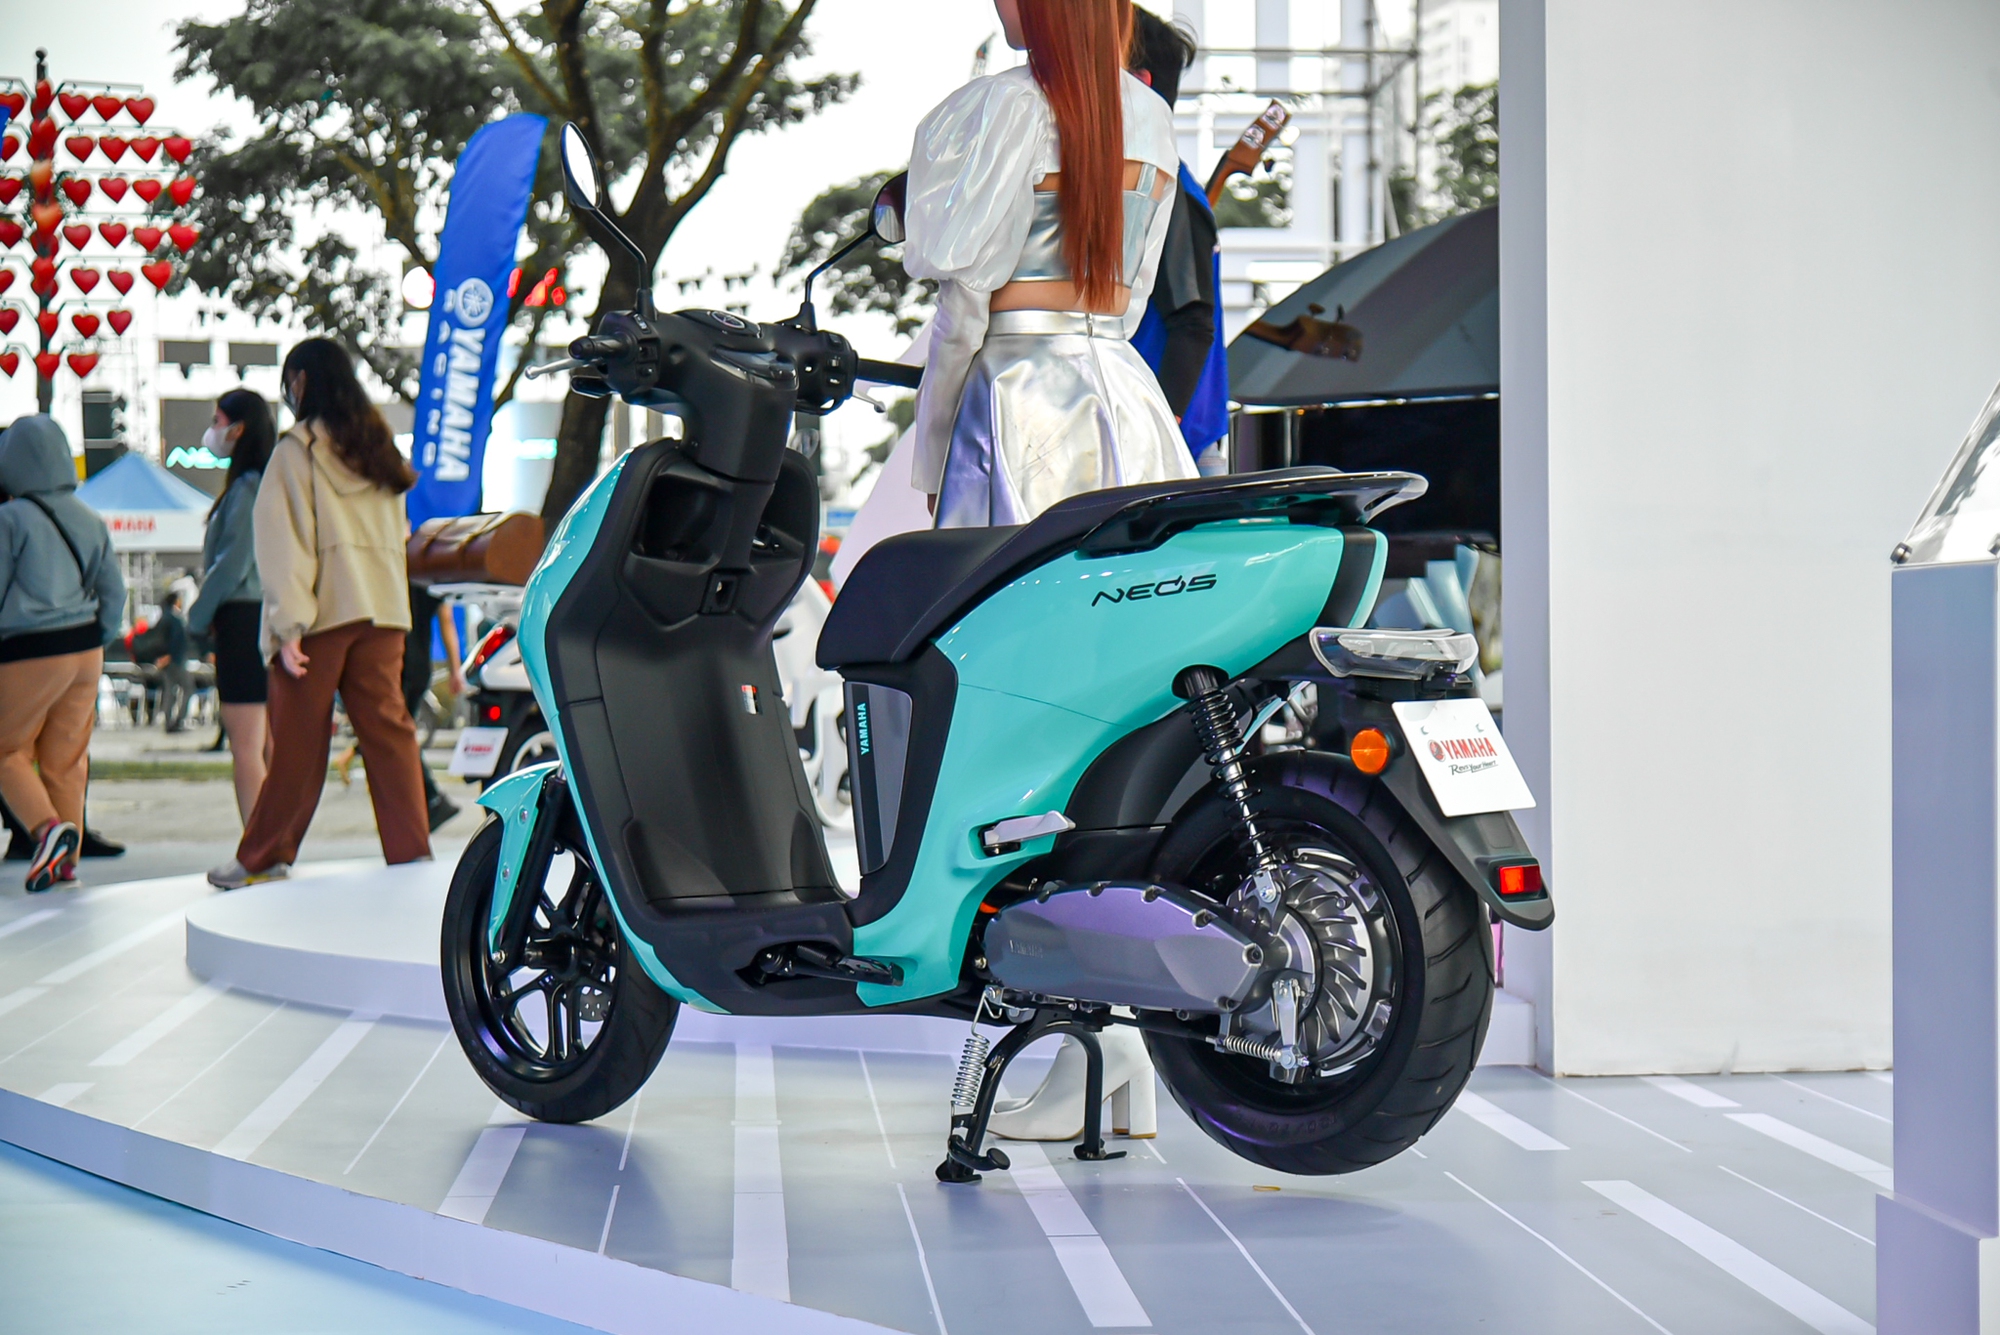 Yamaha Neos ra mắt Việt Nam: Giá 50 triệu đồng, có thể đi tối đa 144 km, cạnh tranh VinFast Vento S - Ảnh 5.